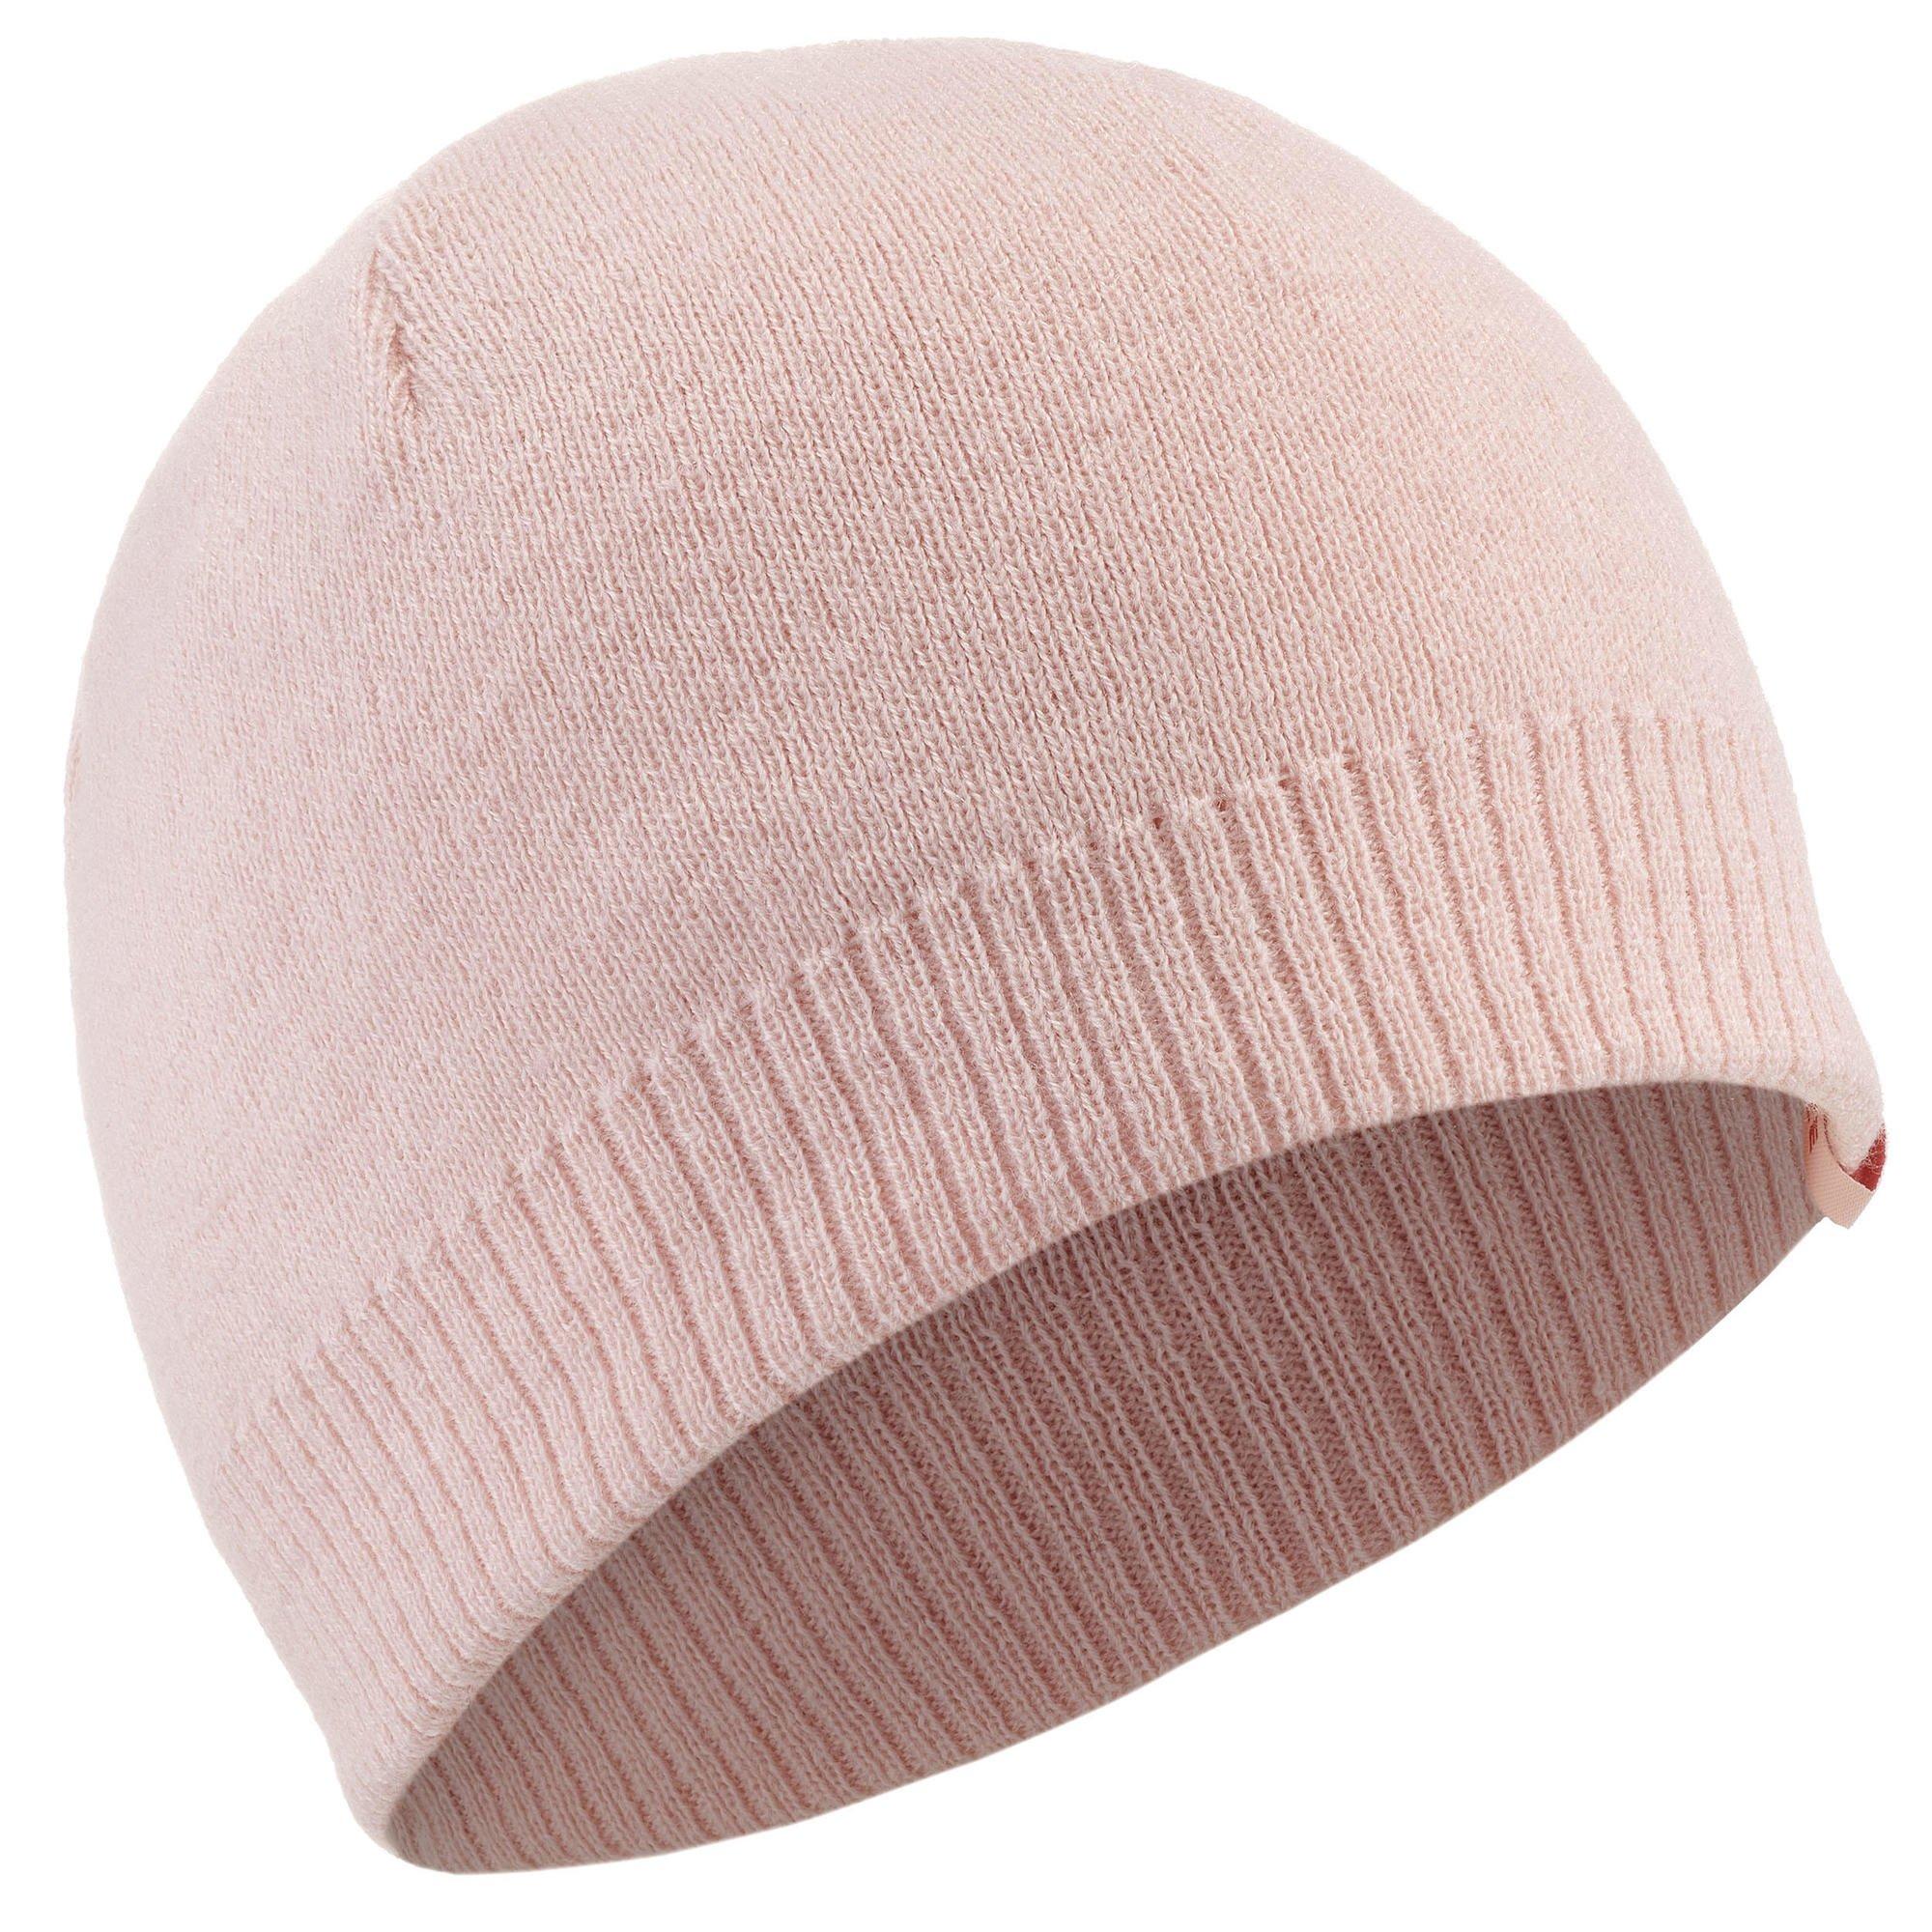 Лыжная шапка Decathlon для взрослых — простая Wedze, розовый женская шапка зимняя вязаная шапка акриловая теплая осенняя однотонная лыжная шапка для активного отдыха